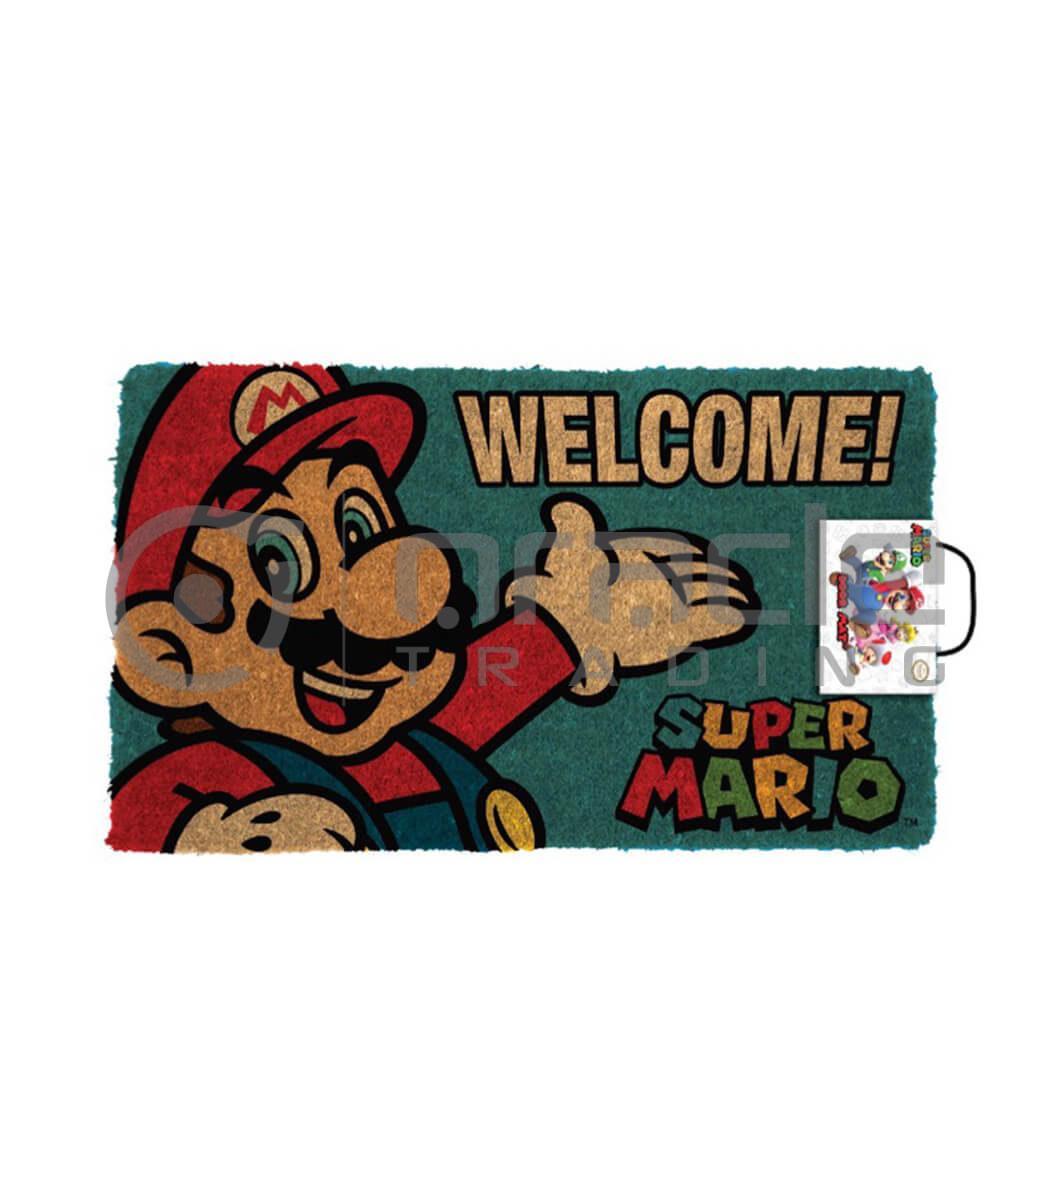 Super Mario Doormat - Welcome